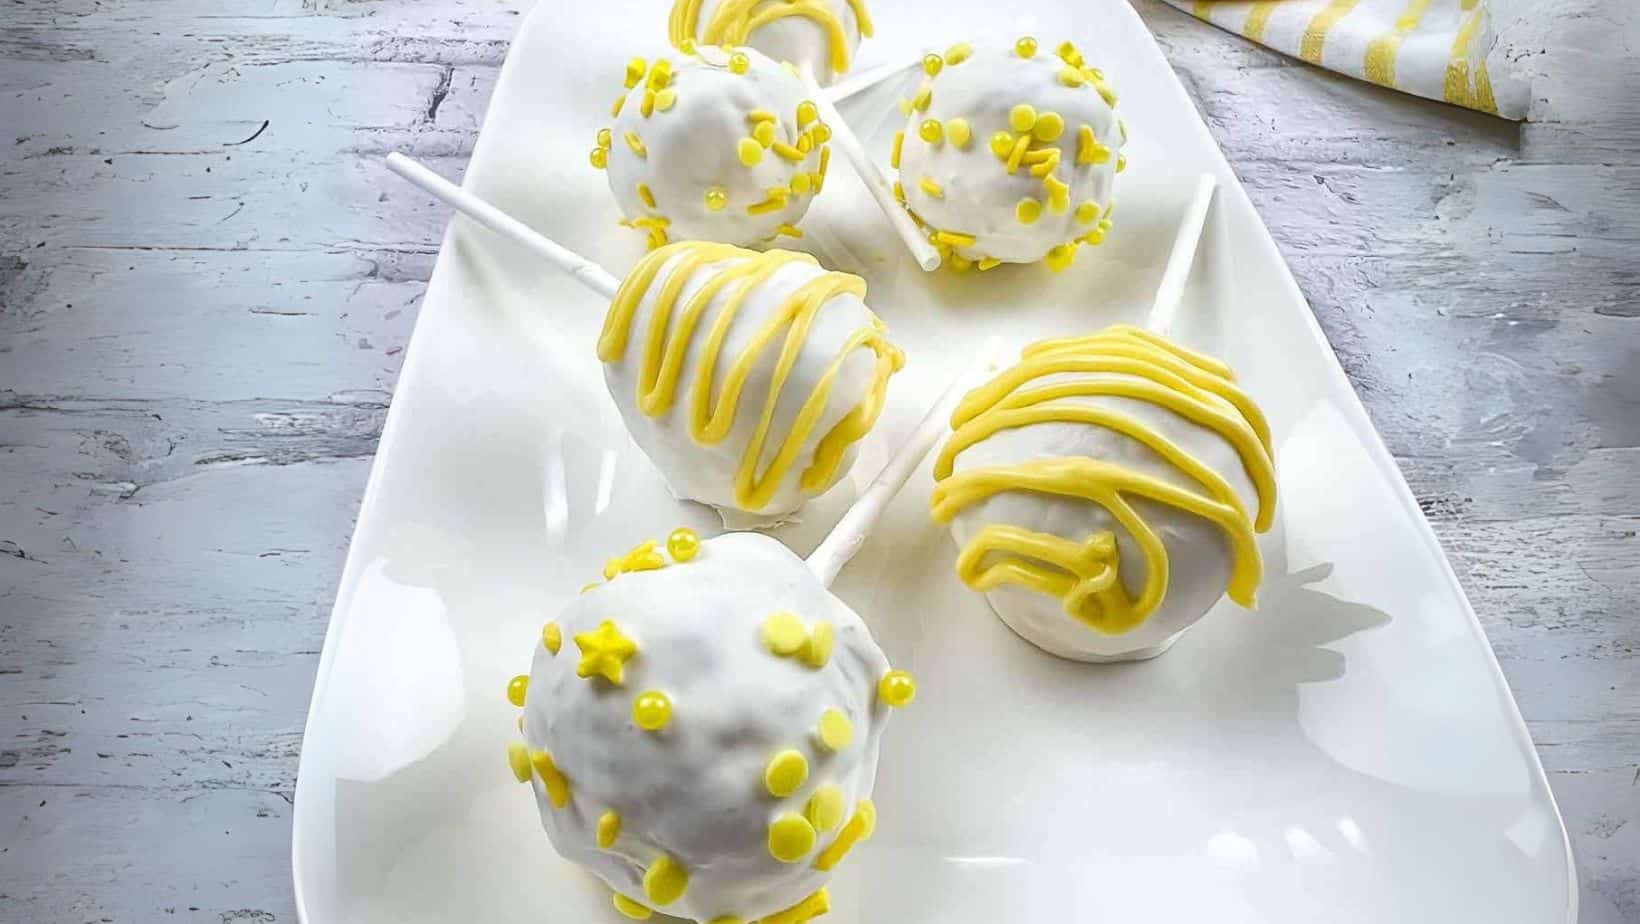 Lemon cake pops on a white plate.